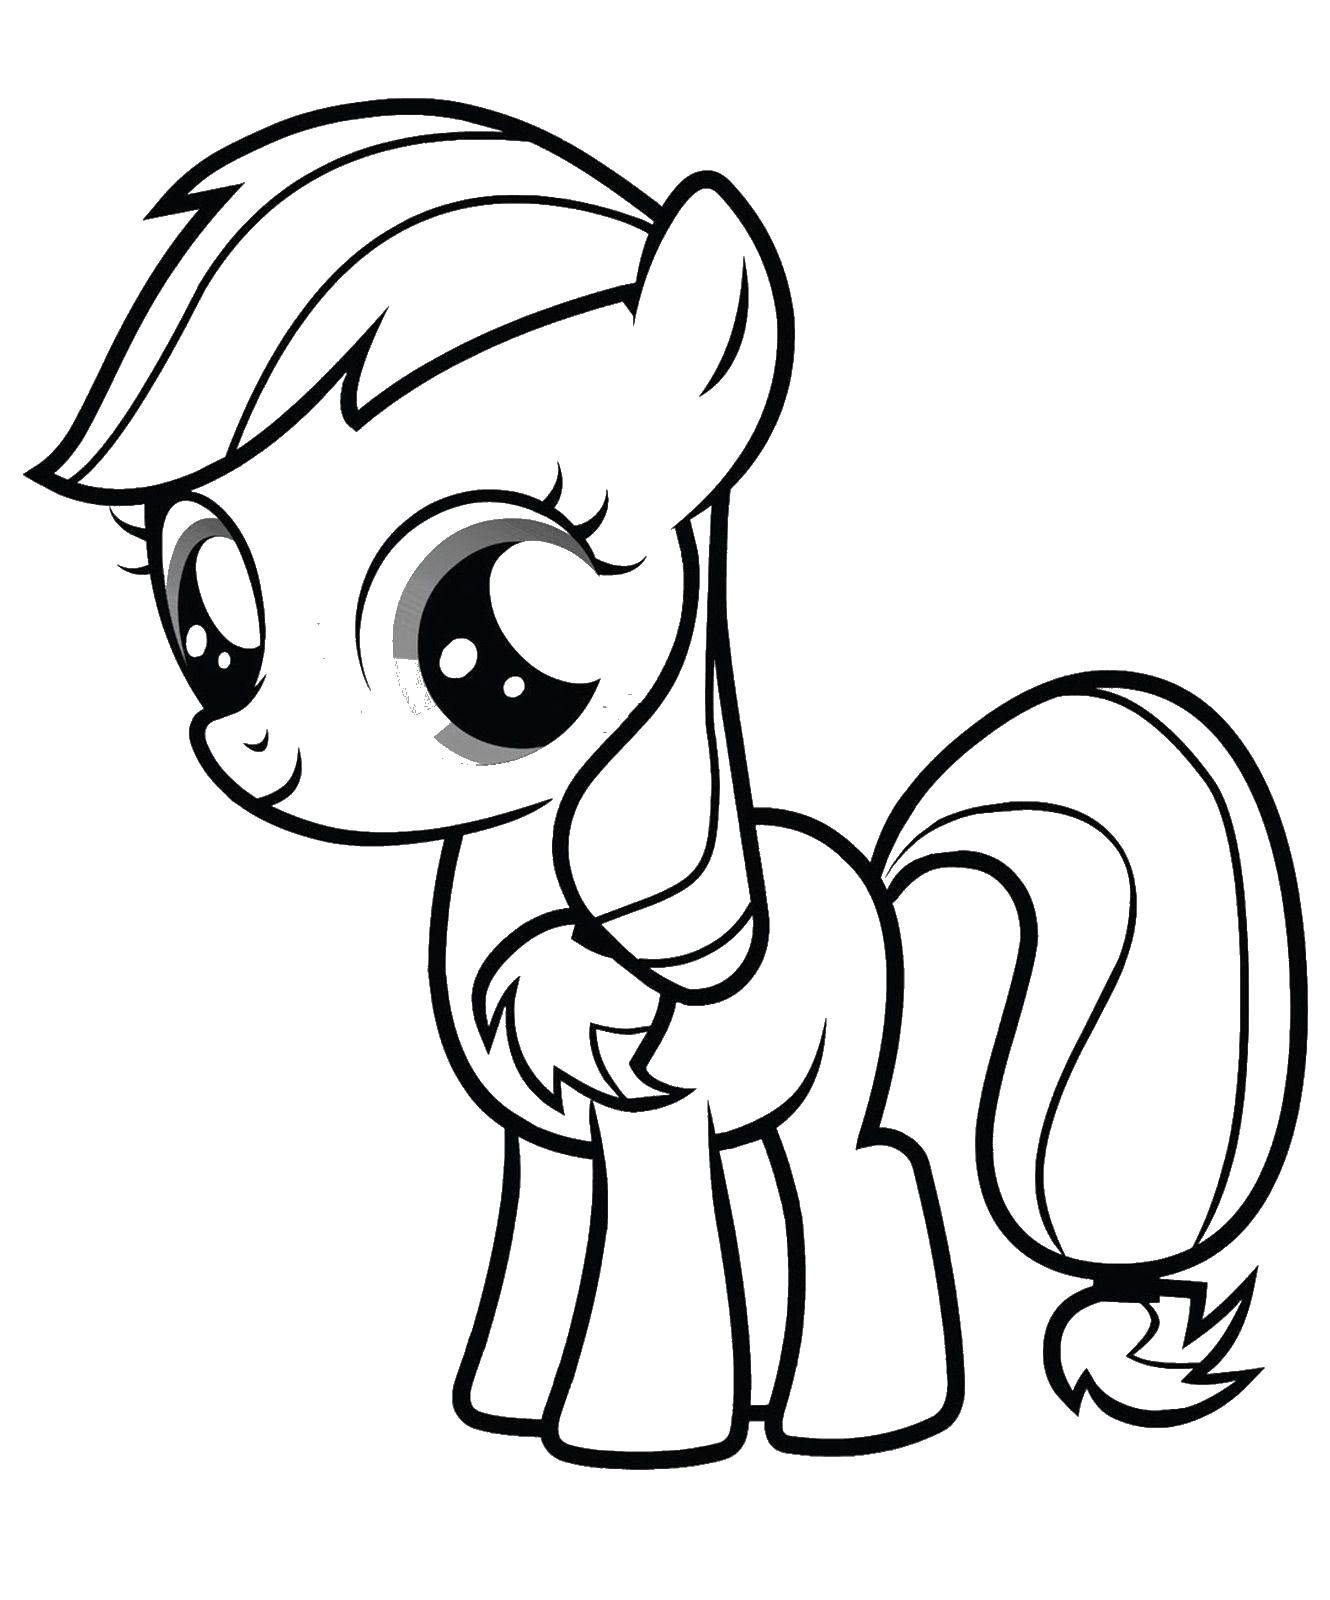 Название: Раскраска My little pony. Категория: раскраски. Теги: my little pony, пони, мультфильмы.